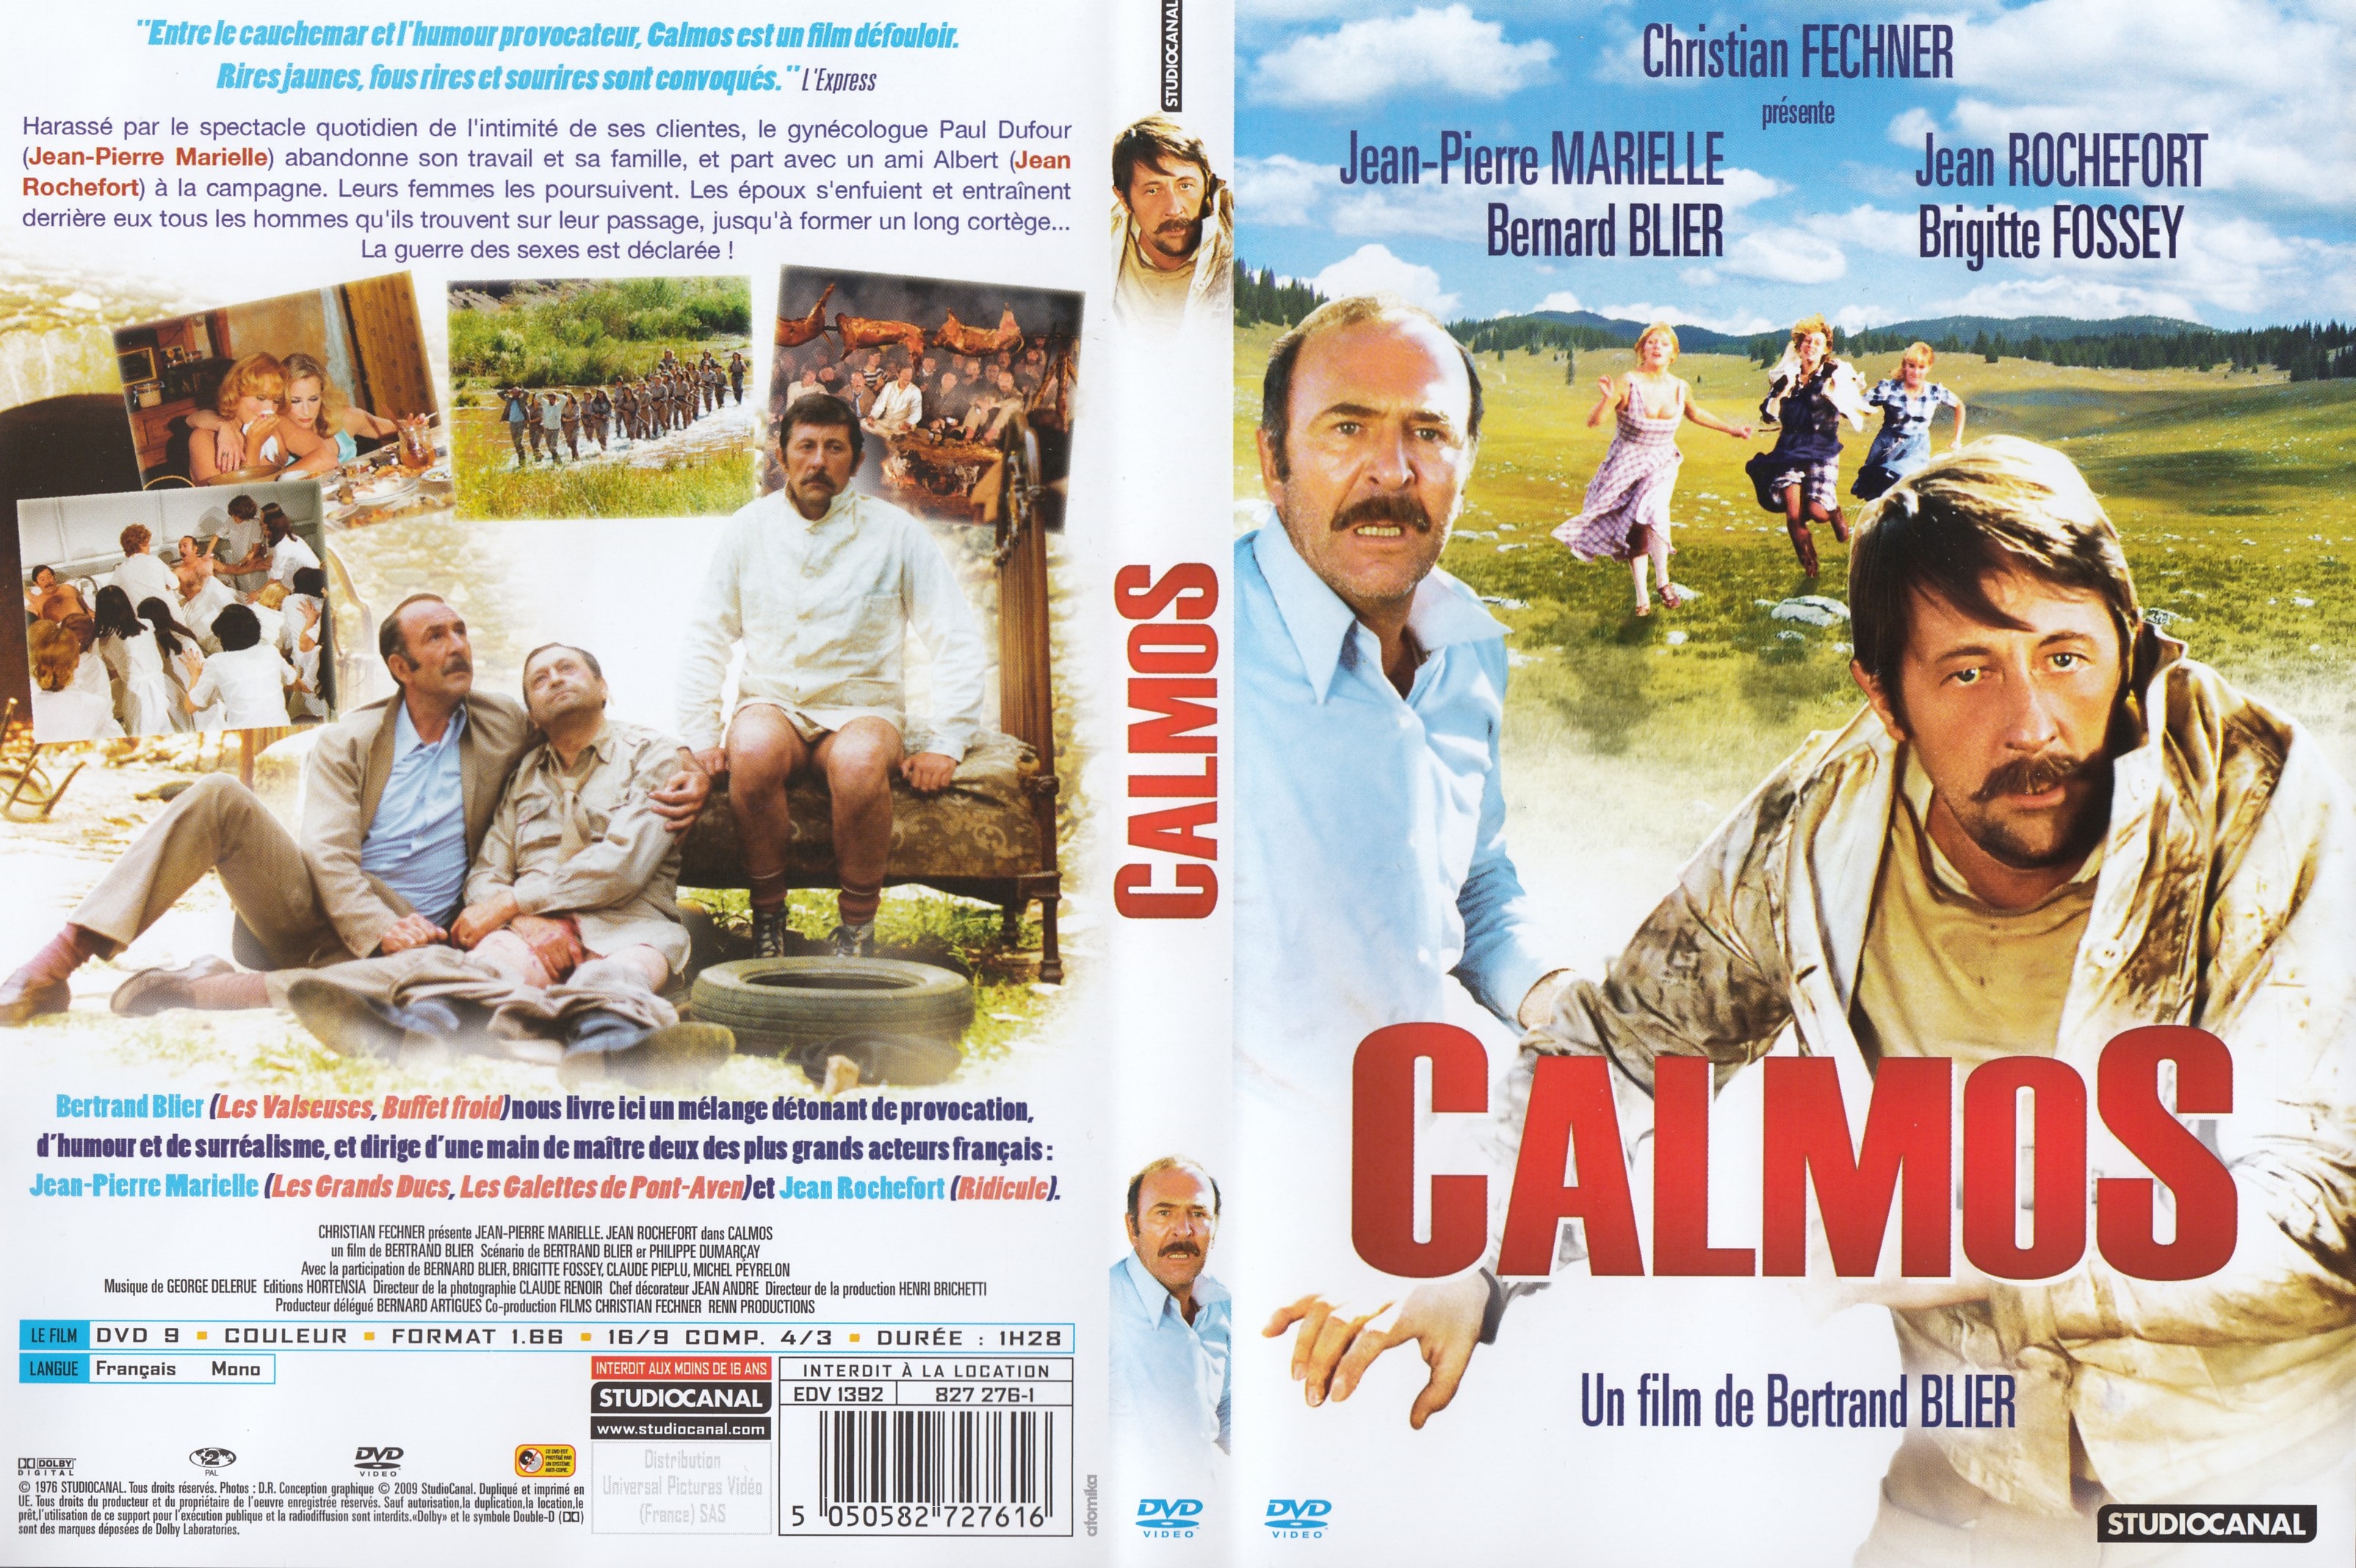 Jaquette DVD Calmos v2